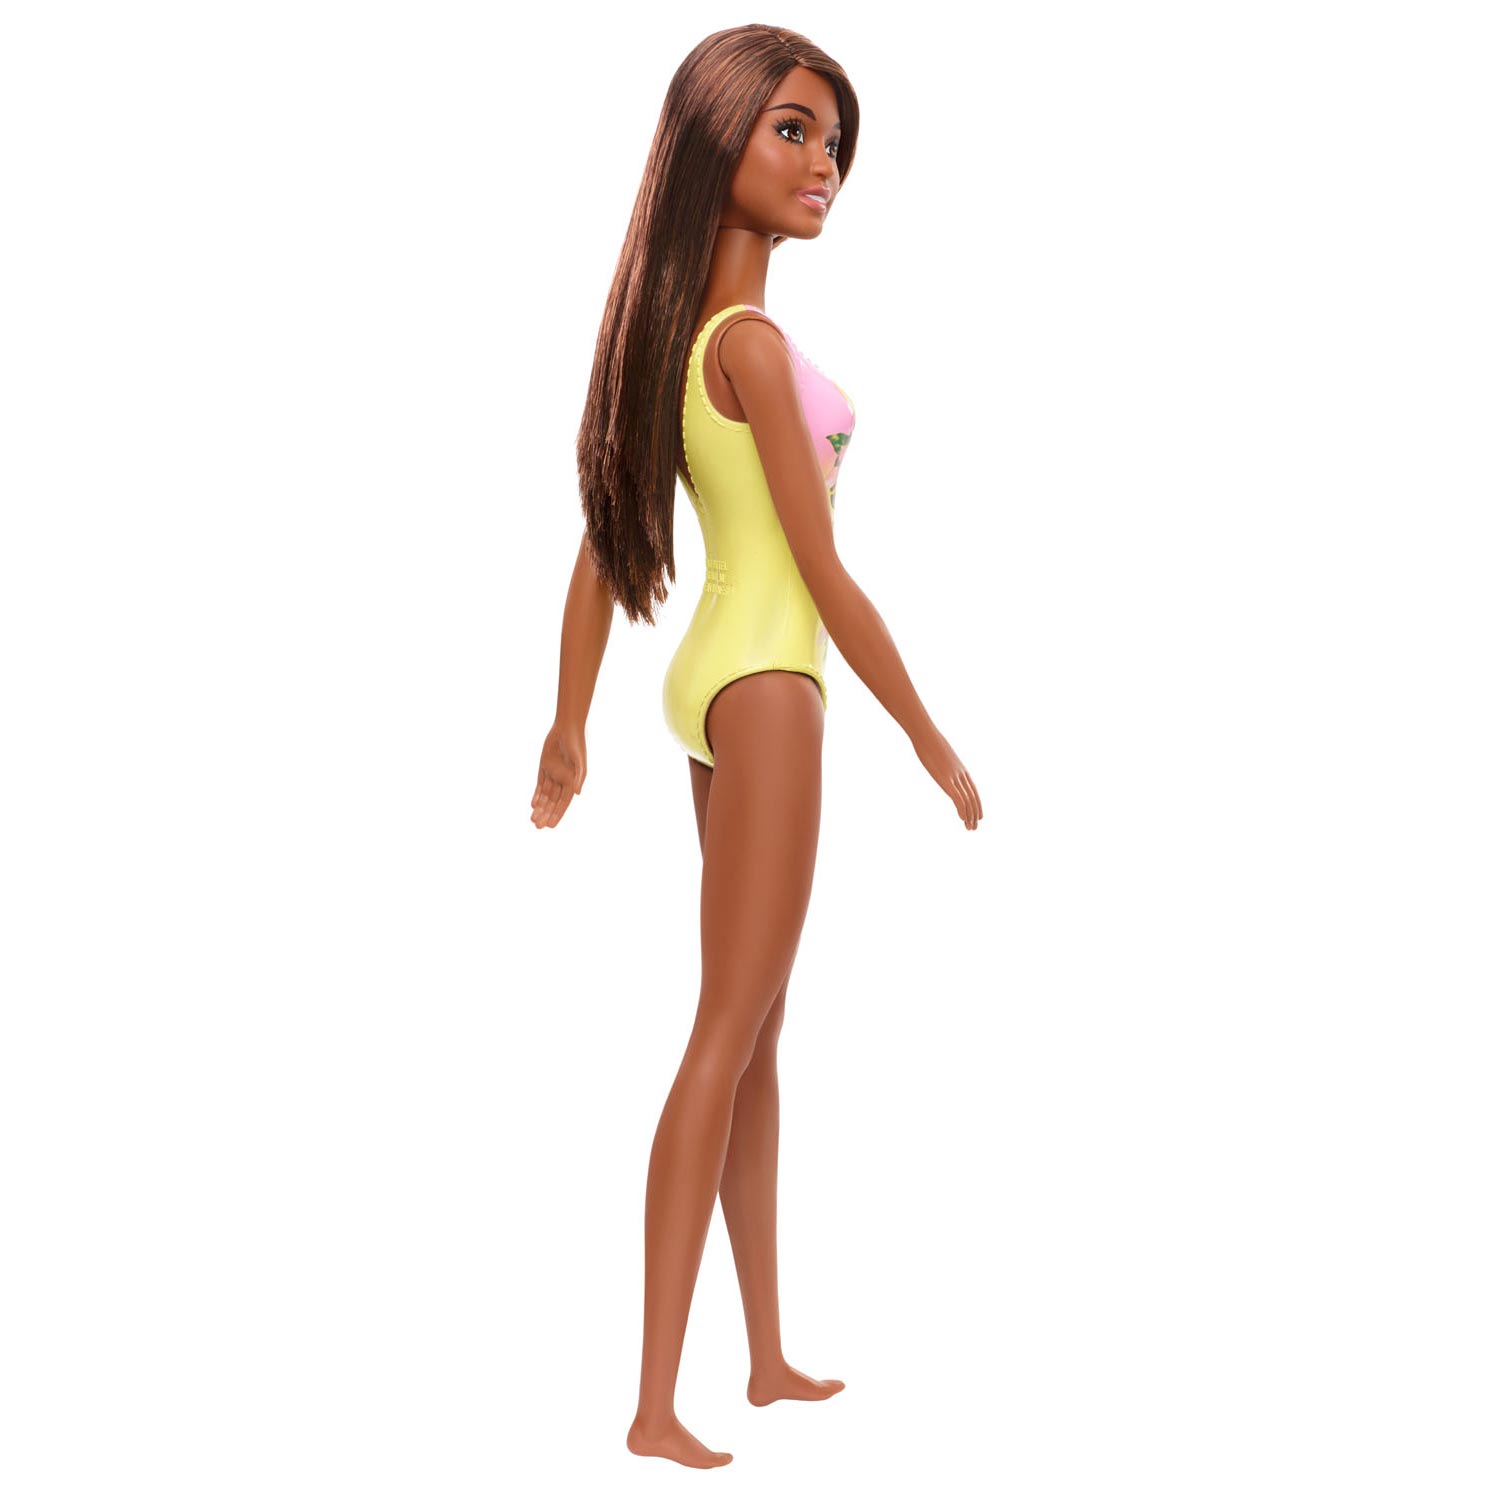 Barbiepop Beach Pop - Bruin Haar met Badpak Print